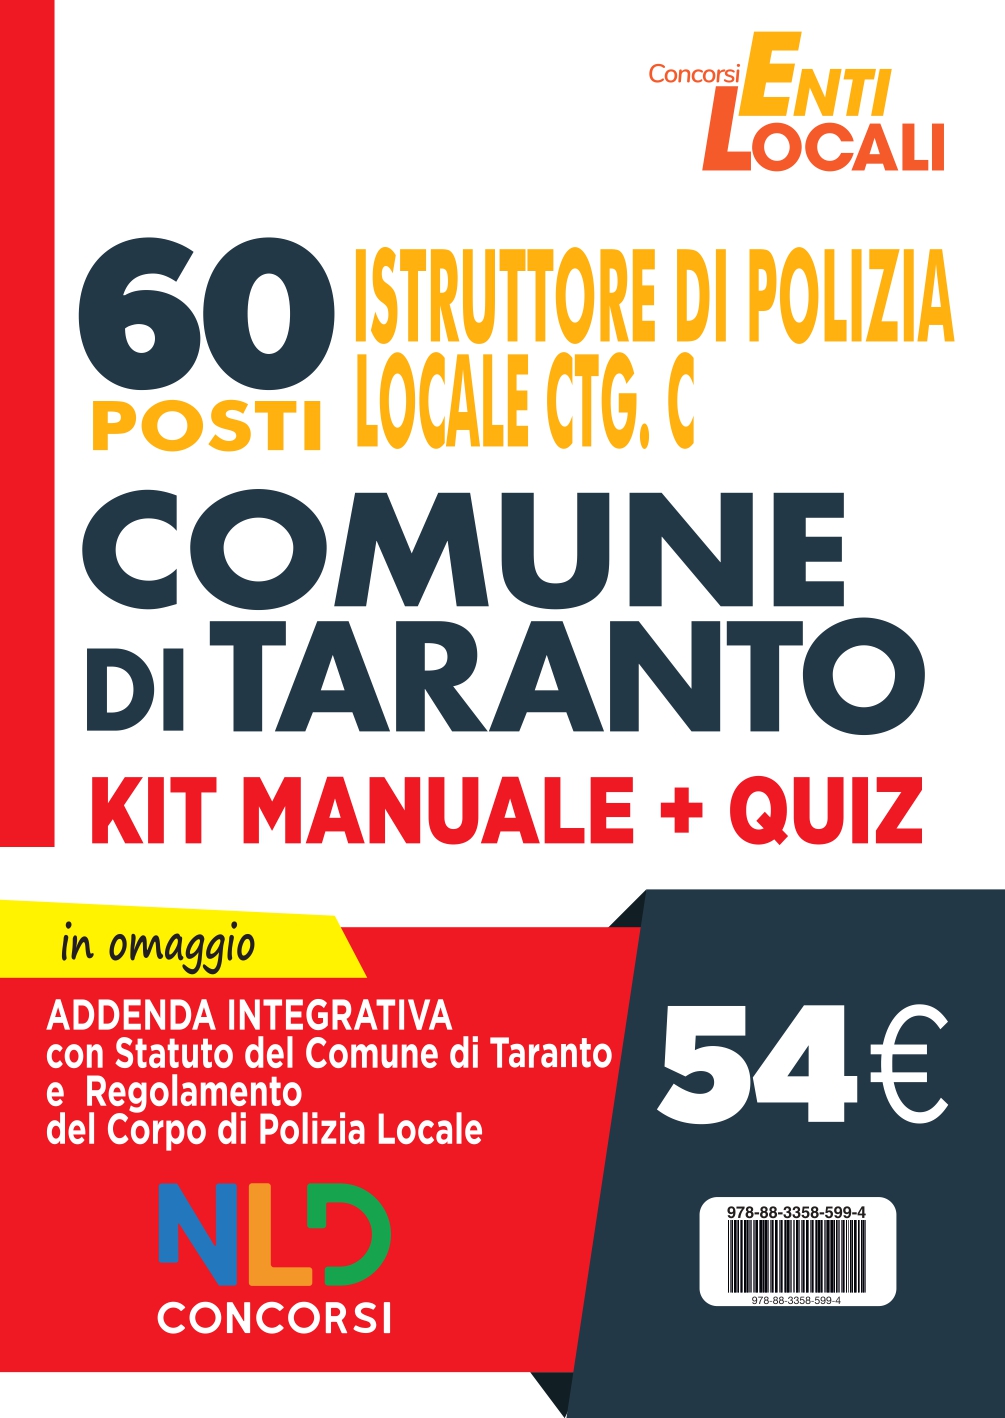 Comune di Taranto: 60 Posti Polizia Locale Cat. C. Kit Manuale + Quiz per concorso Vigile Urbano